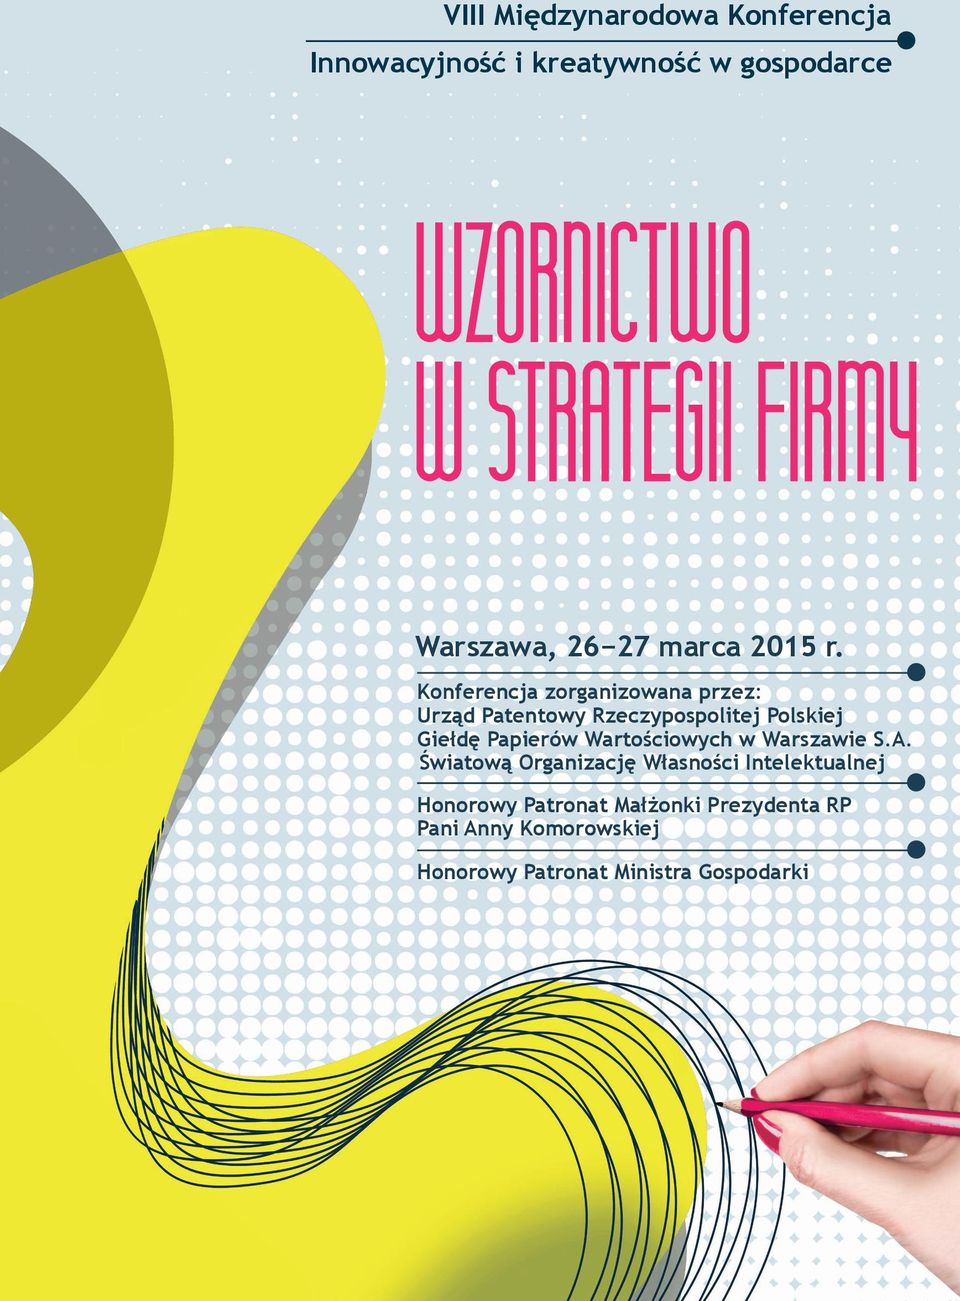 Konferencja zorganizowana przez: Urząd Patentowy Rzeczypospolitej Polskiej Giełdę Papierów